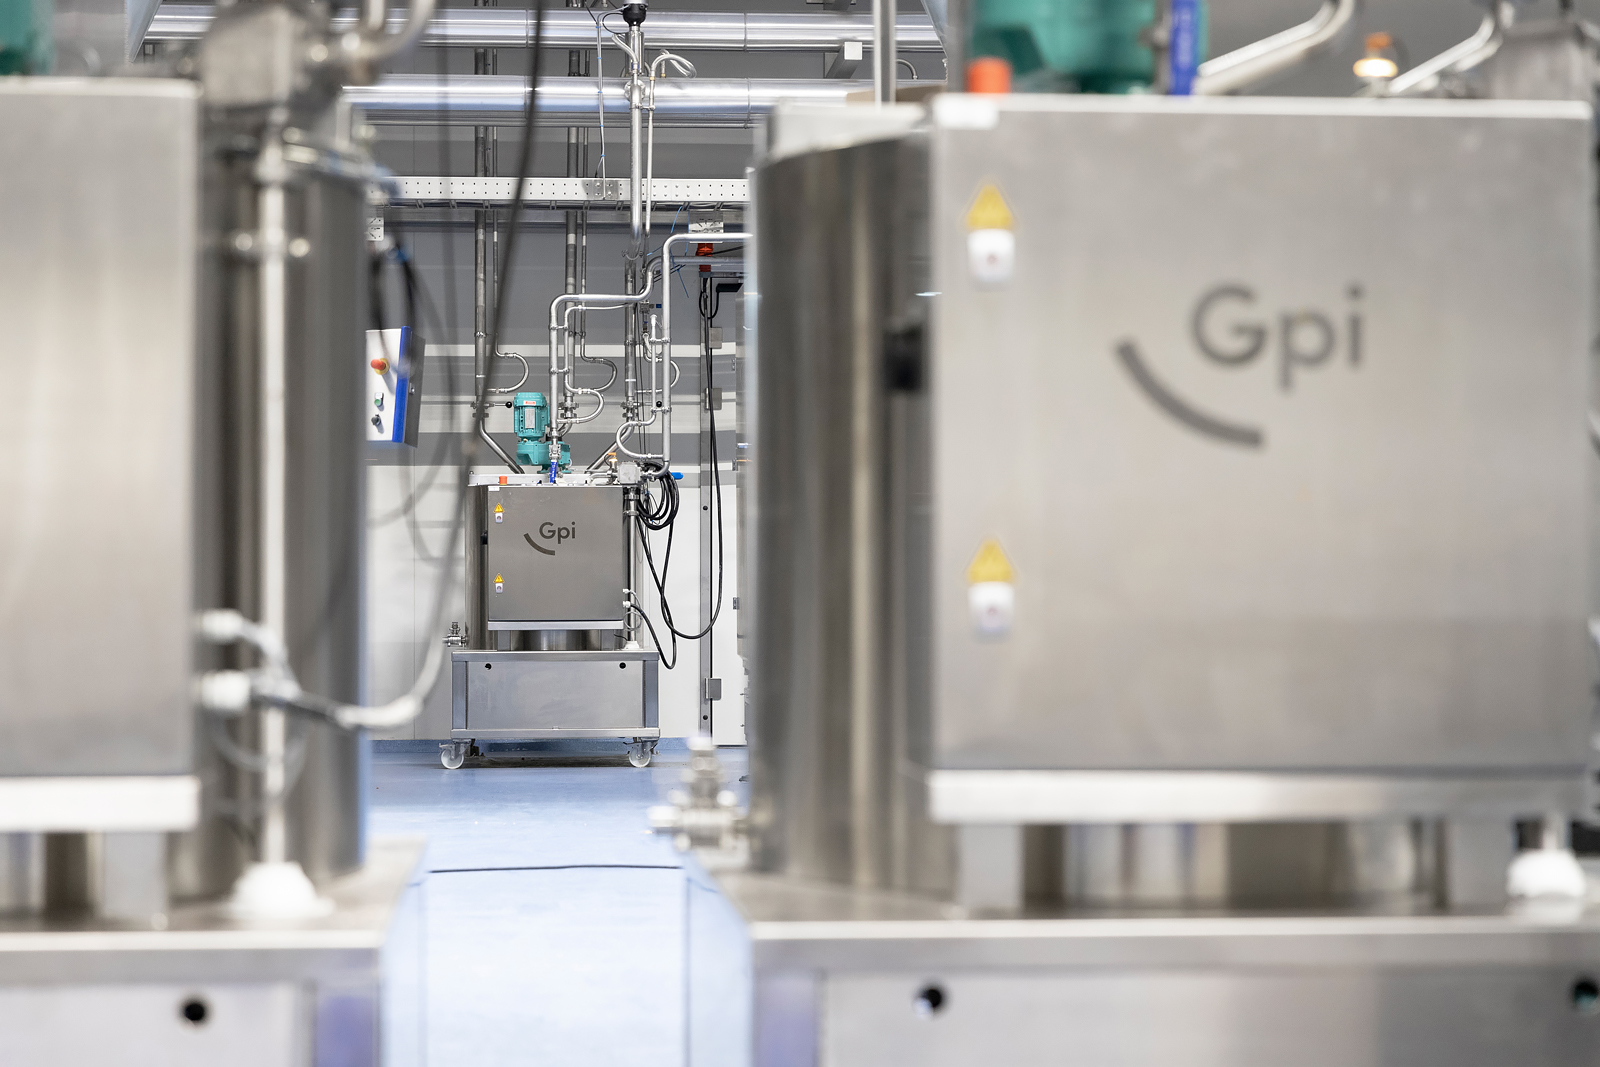 De chocolade procesapparatuur van Gpi helpt de productie van Menken Orlando's kwaliteitsproducten naar een 'next level' te brengen